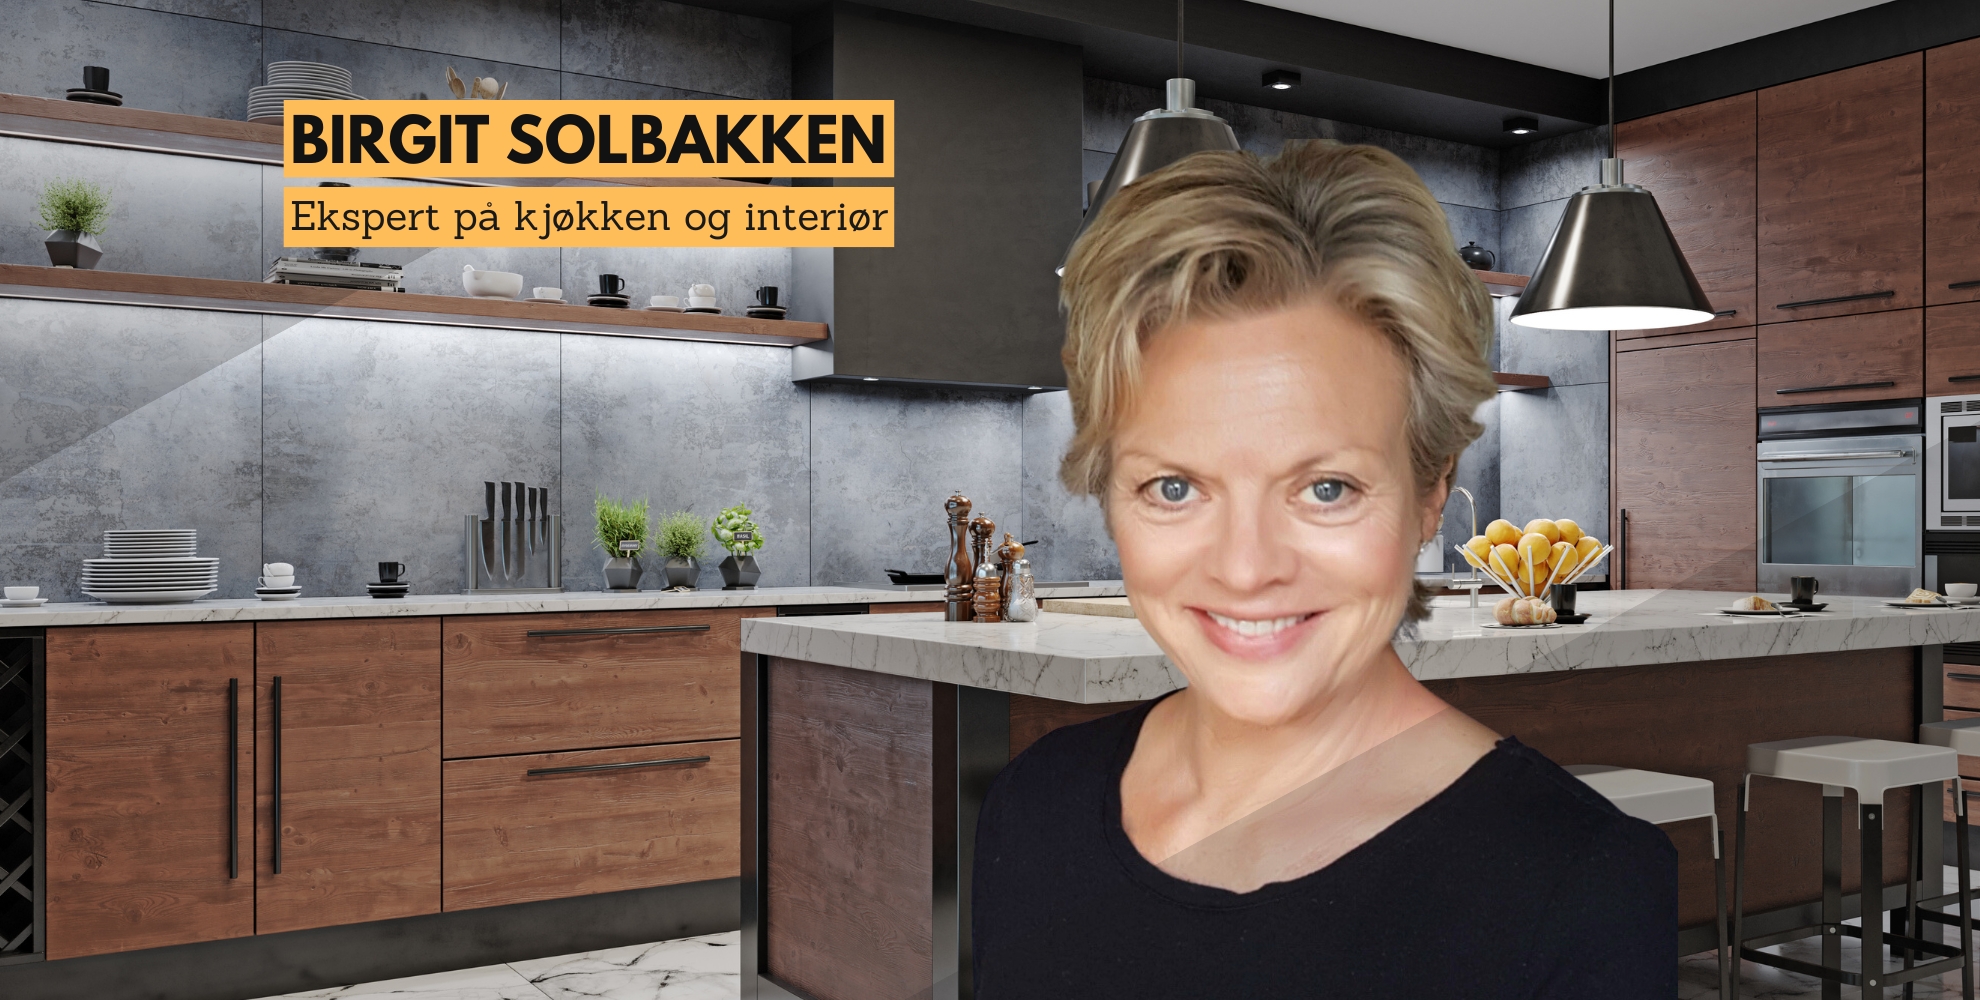 Bilde av Birgit Solbakken og et kjøkken i bakgrunnen, med tekst: Birgit Solbakken, en ekspert på kjøkken og interiør